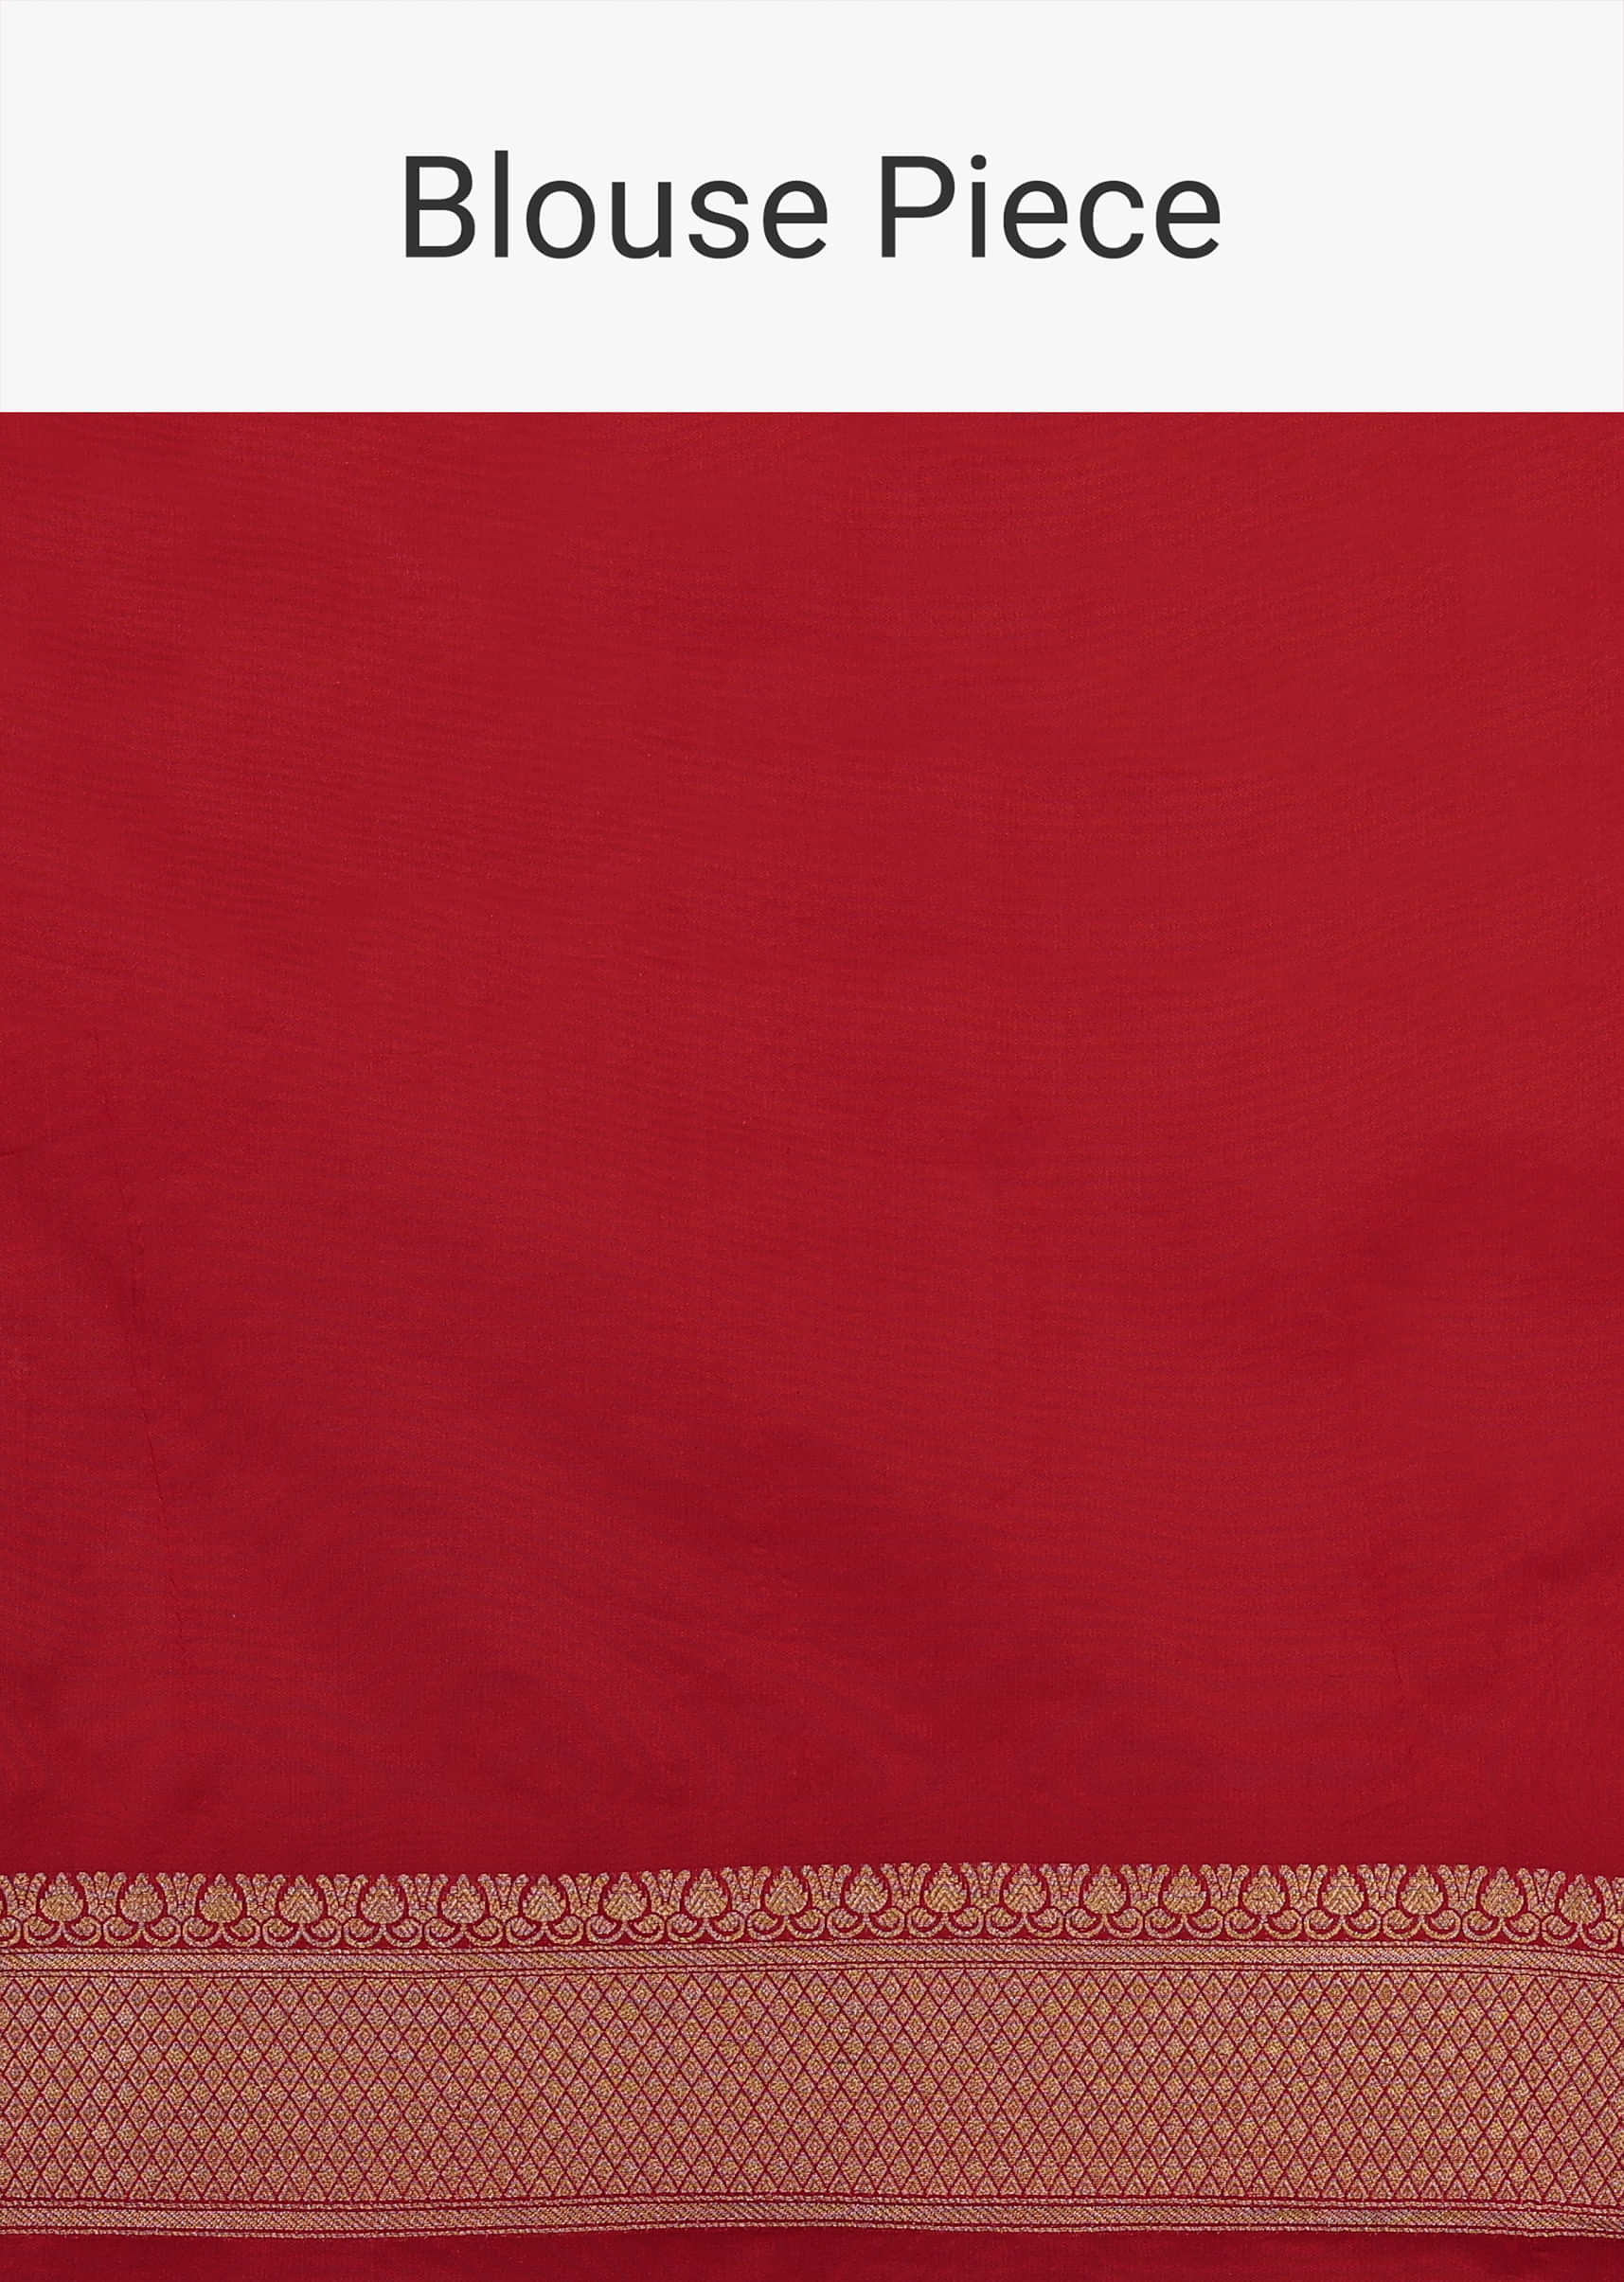 Fiery Red Saree In Pure Banarasi Silk With Upada Zari Weave Butti Work